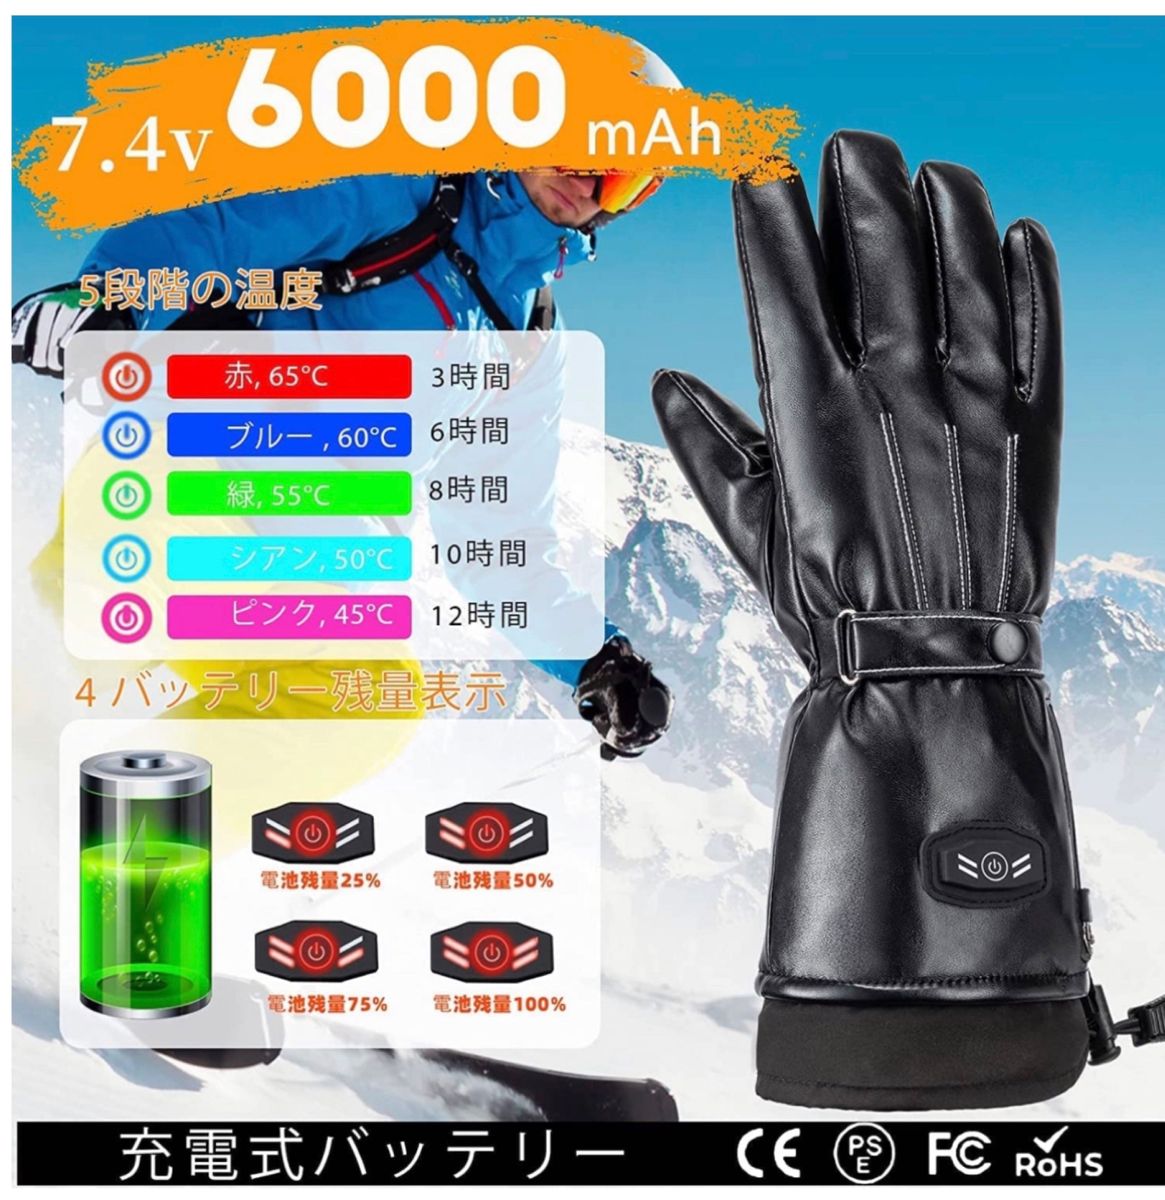 電熱グローブ 皮質 防寒 防水 ヒーター手袋 6000mAh×2個バッテリー付属 タッチパネル対応 45-65℃ 3段階温度調節